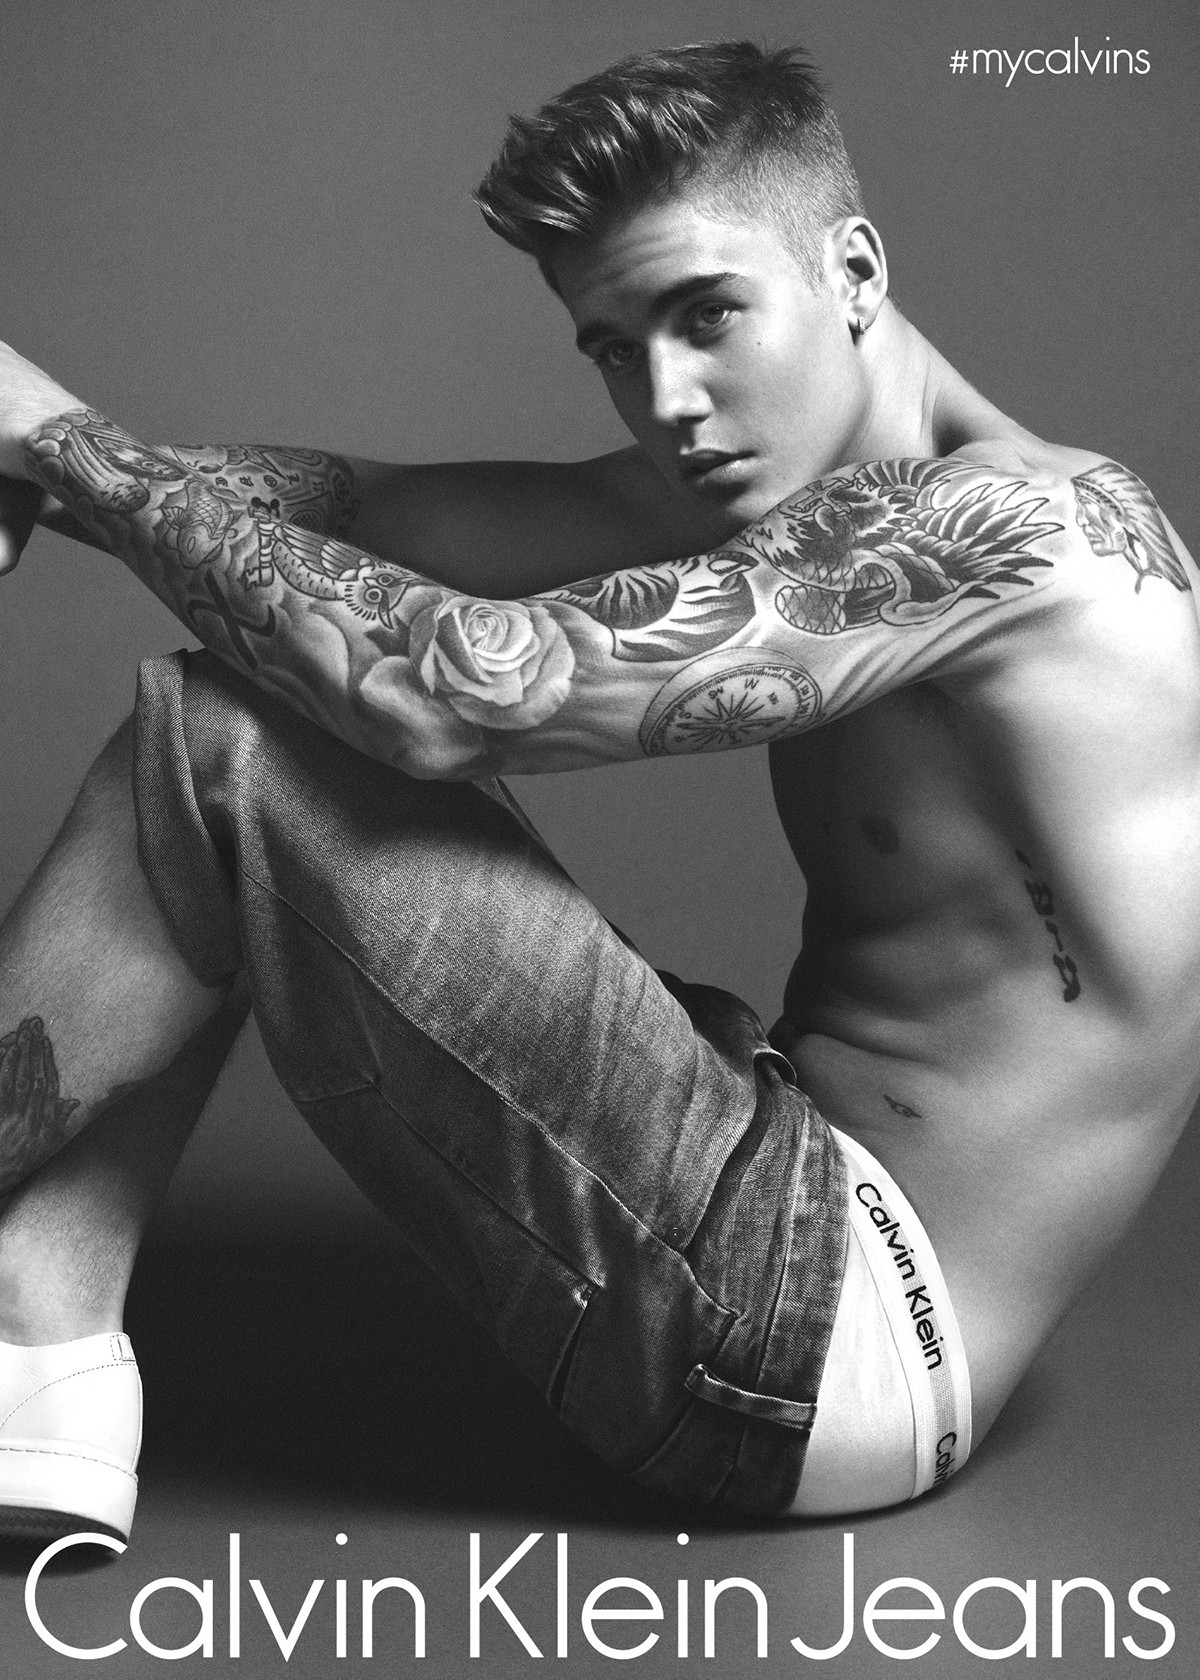 Justin Bieber em campanha da Calvin Klein (Foto: Divulgação)